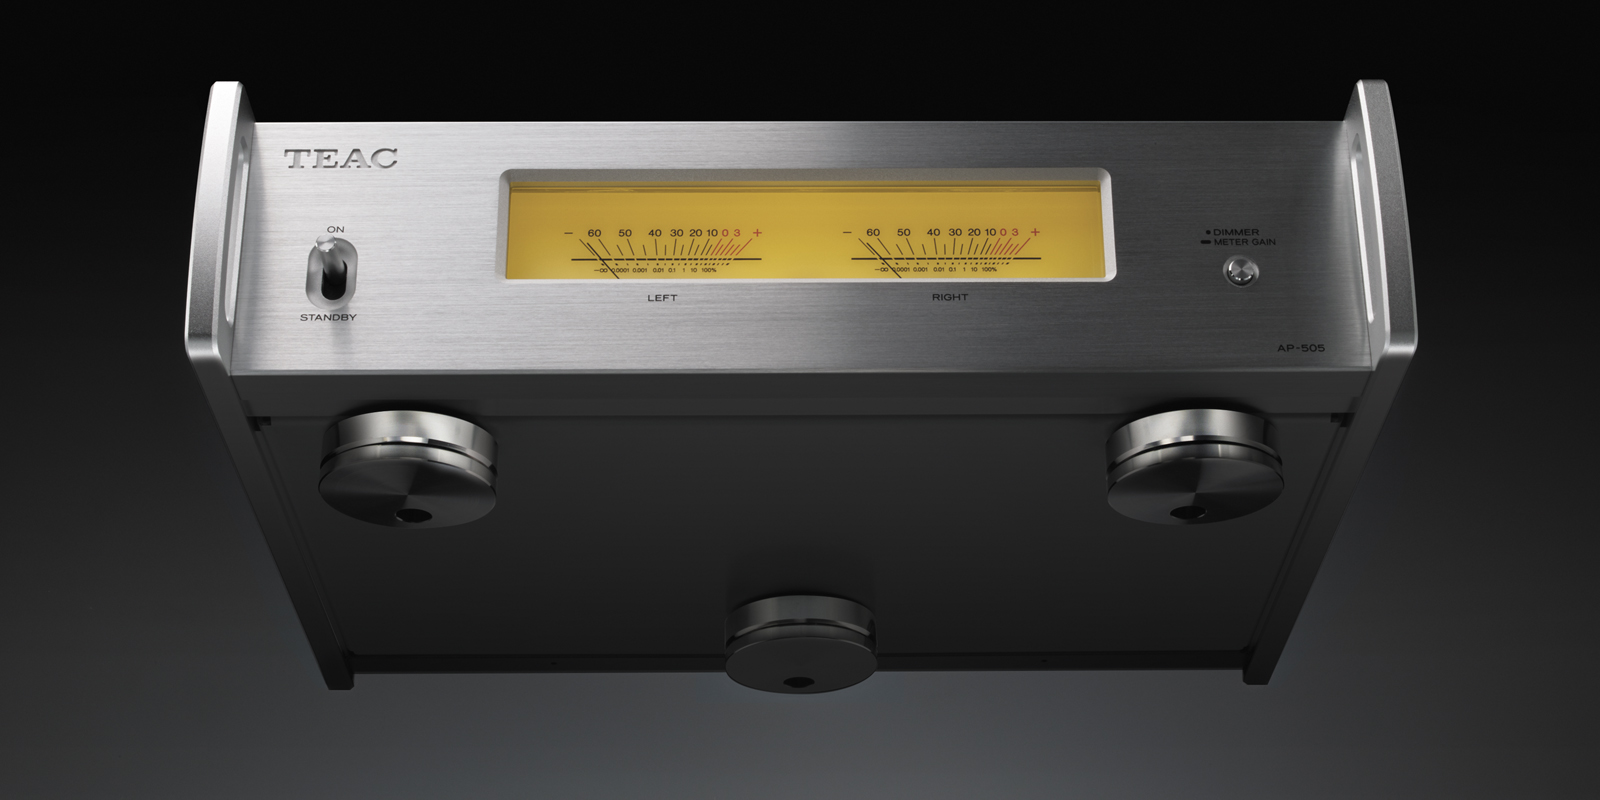 その音に価格もサイズも疑った。15万円切りのパワーアンプ TEAC「AP-505」は次世代オーディオの模範だ